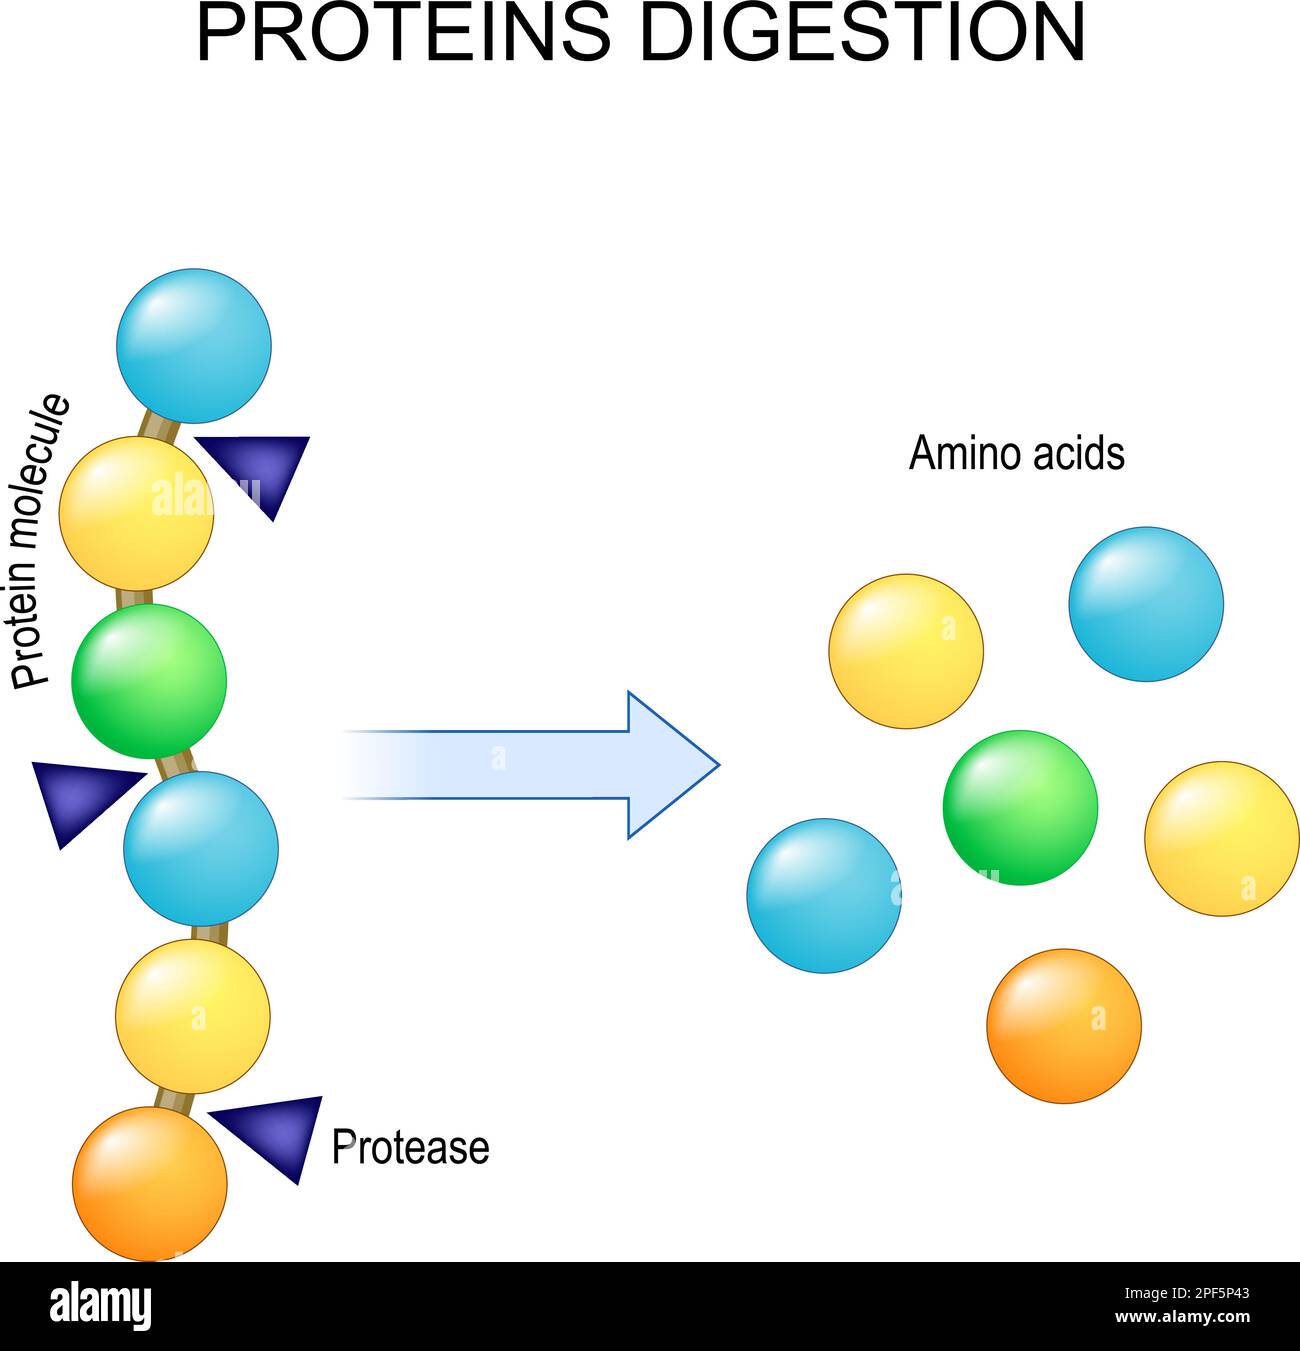 Digestione della proteina. Enzimi le proteasi sono la digestione rompe la proteina in singoli amminoacidi, che sono assorbiti nel sangue. Illustrazione vettoriale Illustrazione Vettoriale